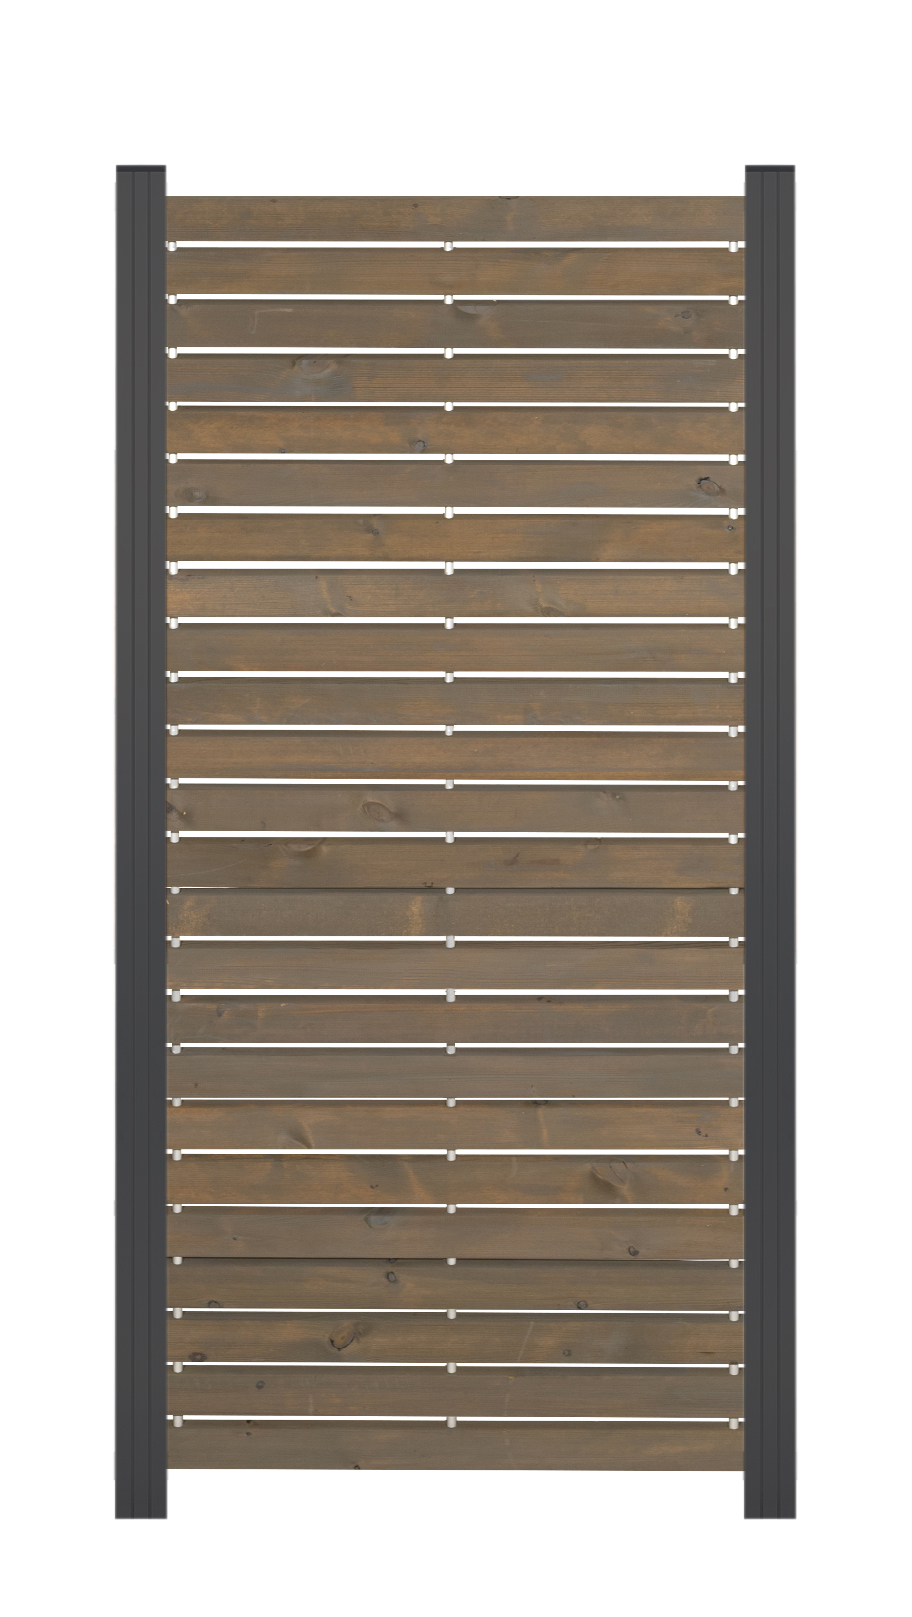 Rhombus-Steckzaun Zwischenelement nordische Kiefer,10 Jahre Farbechtheit ca. 81,5x180 cm Grau/anthrazit, Farbbehandelt   